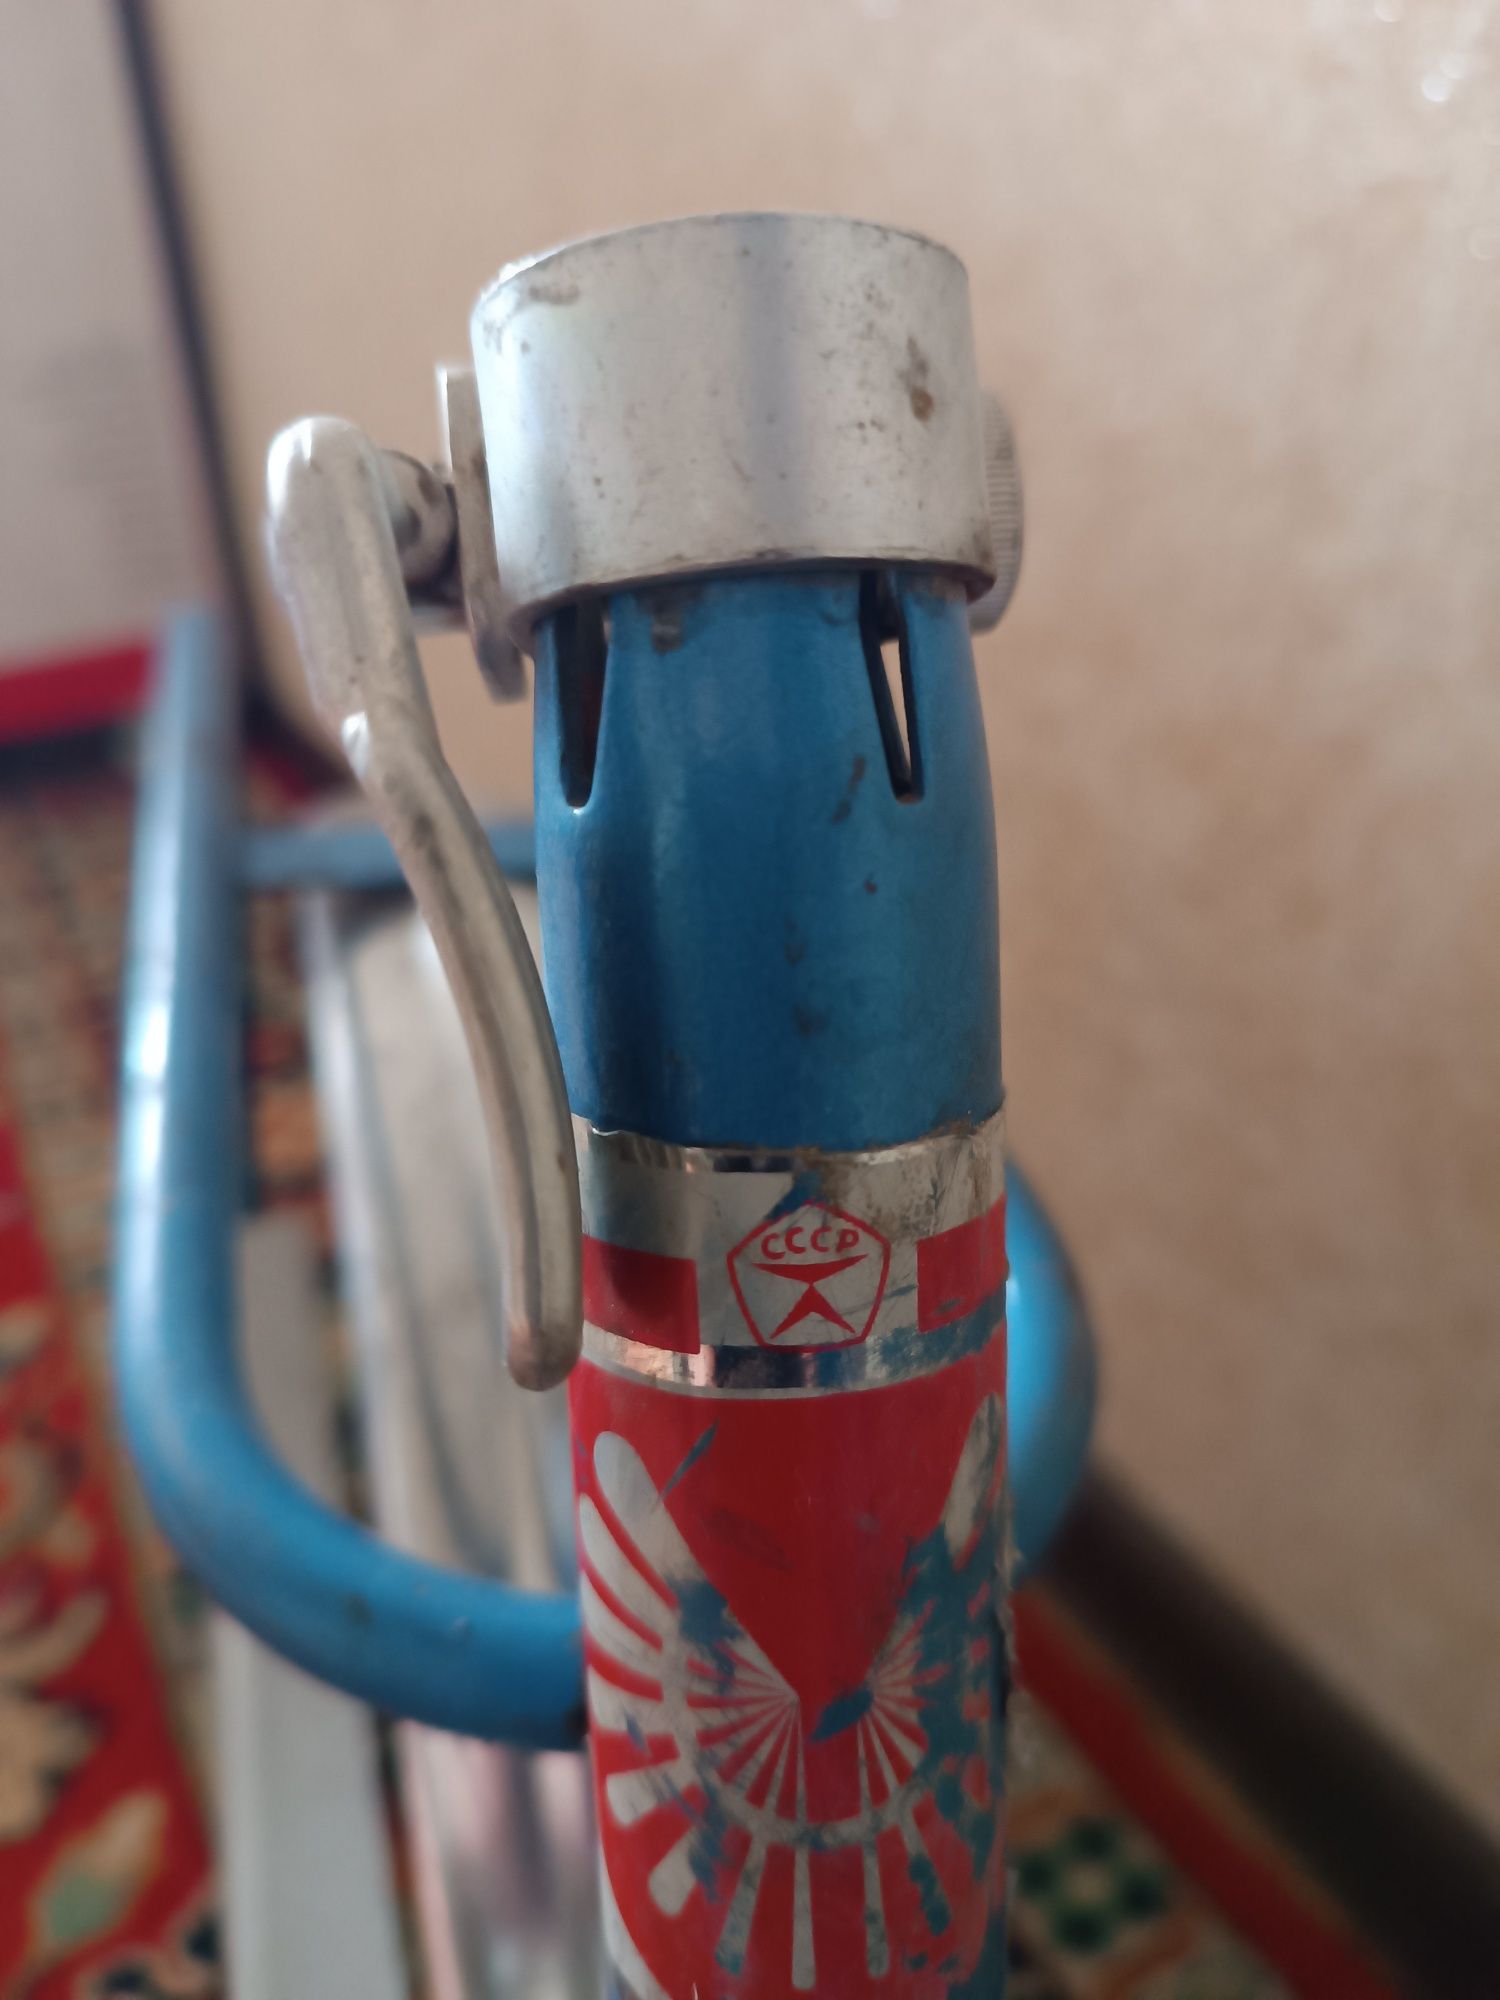 Детский велосипед от 3-х лет, сталь, 350 грн., "Дружок", СССР.